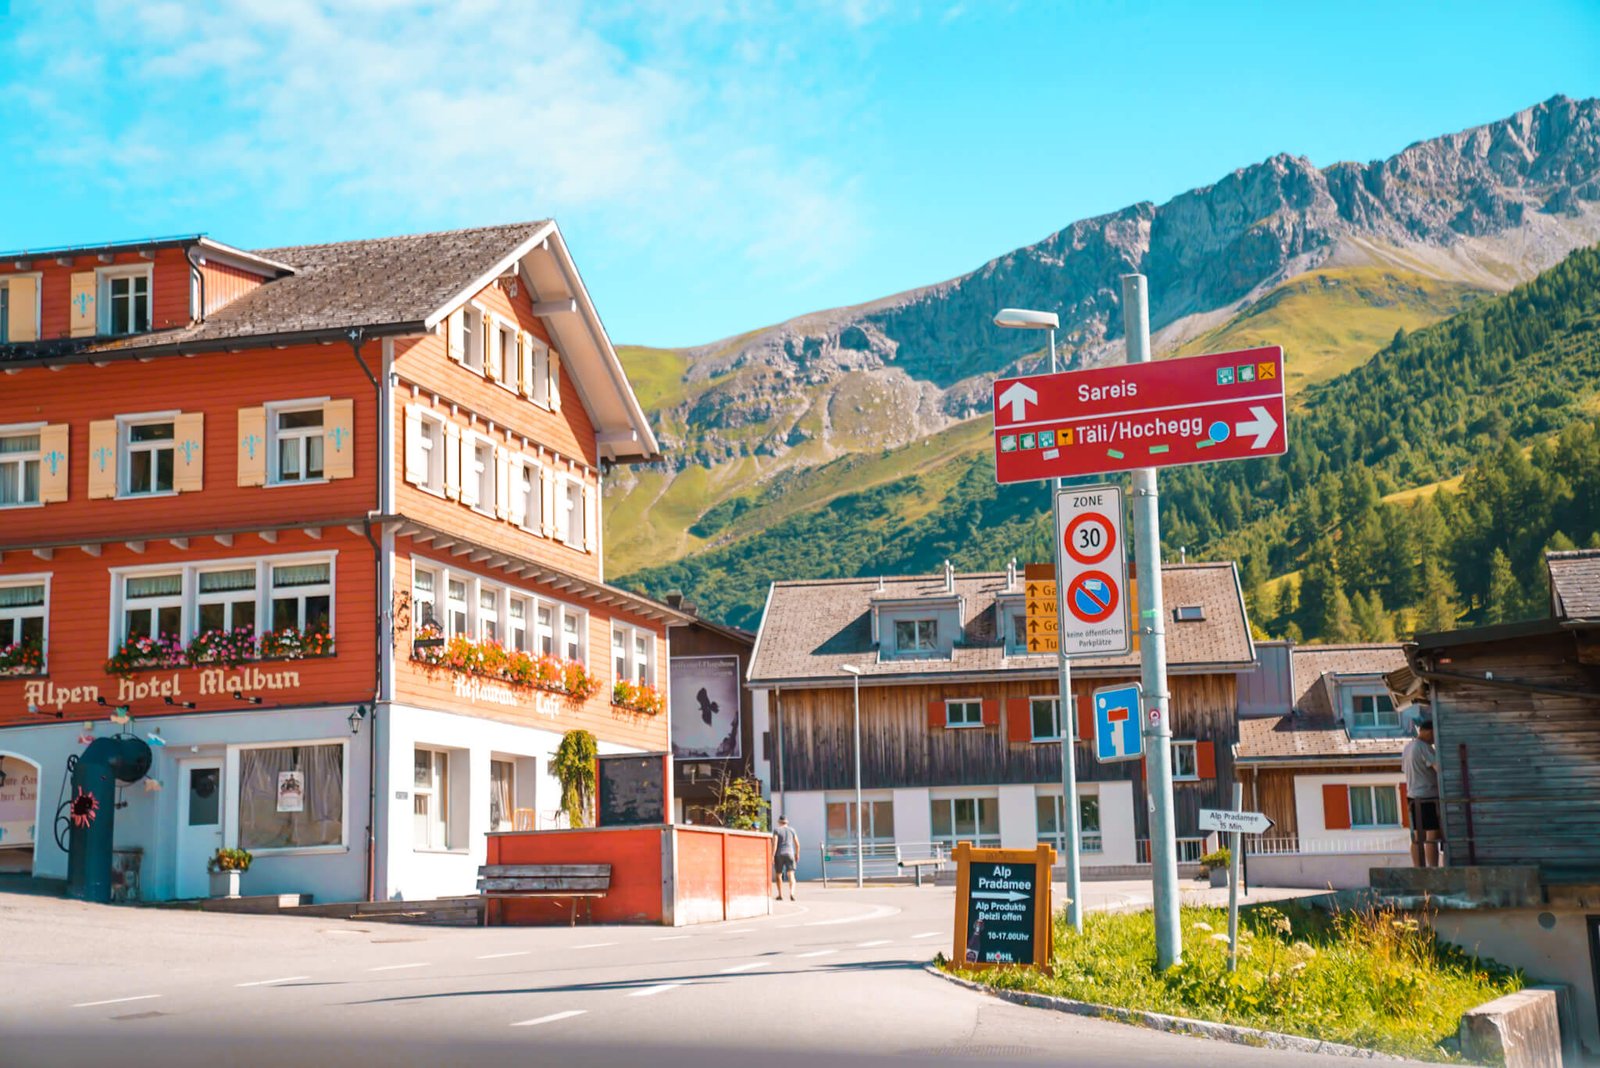 Malbun, where to go while visiting Liechtenstein